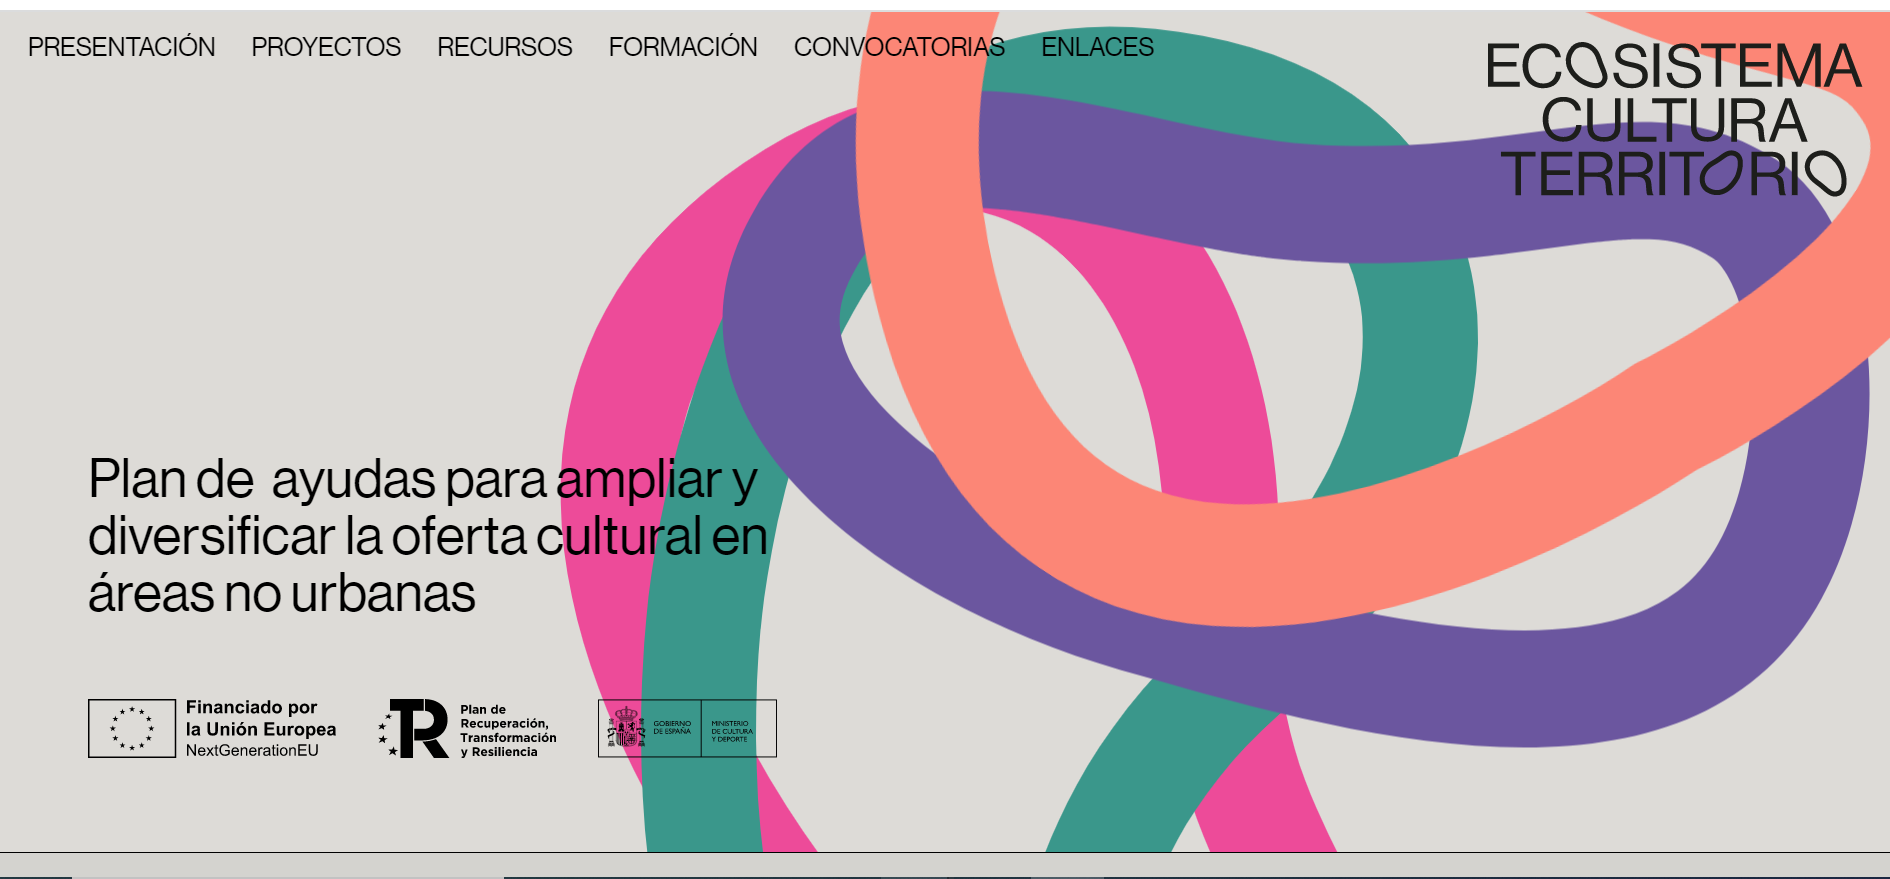 El Ministerio De Cultura Y Deporte Lanza La Web Ecosistema Cultura Territorio Enem 5107